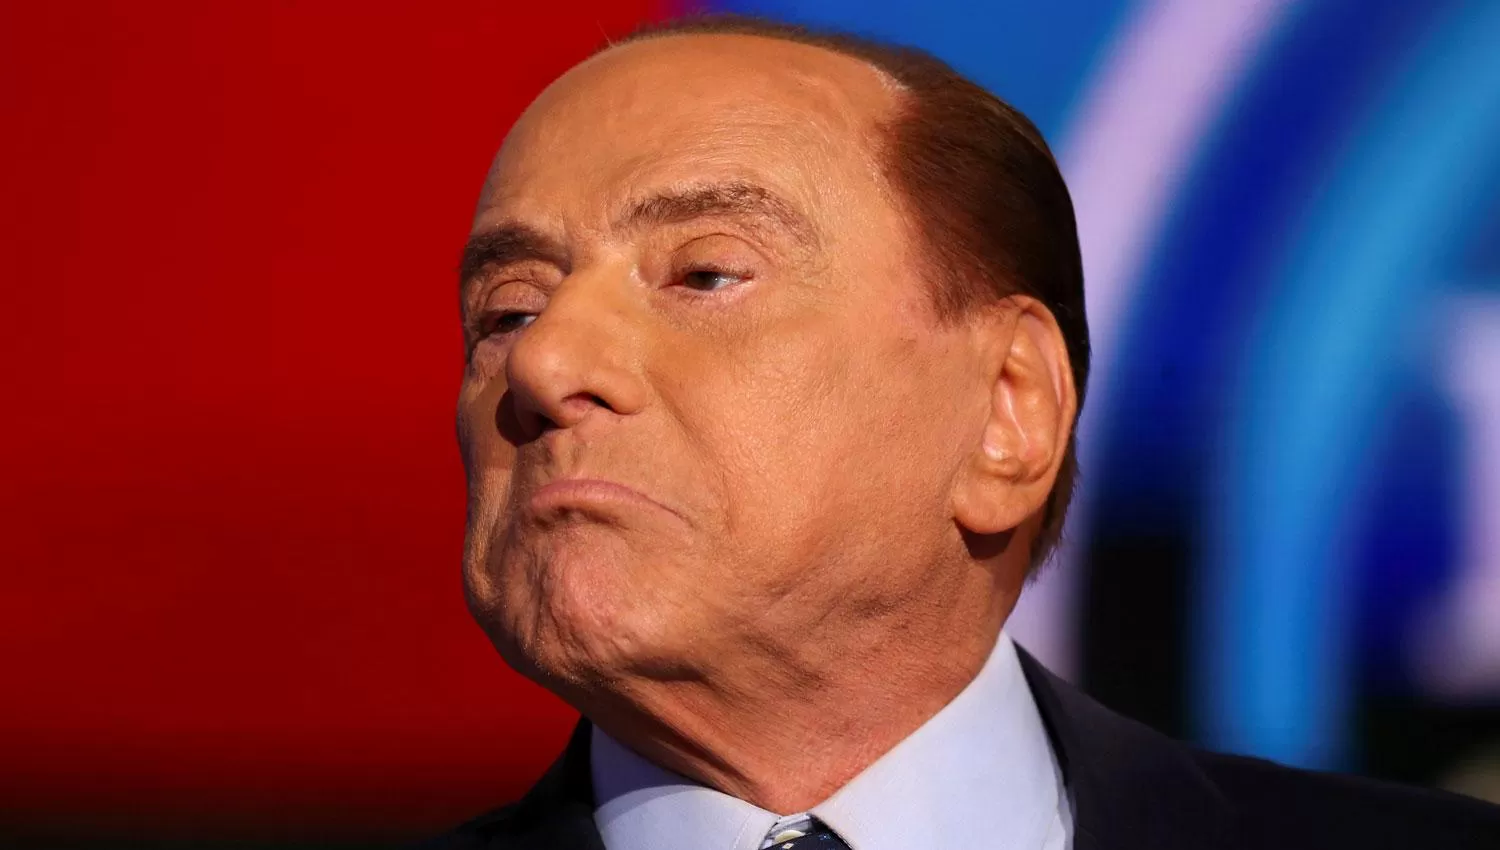 Silvio Berlusconi recibió el alta tras permanecer internado 24 días